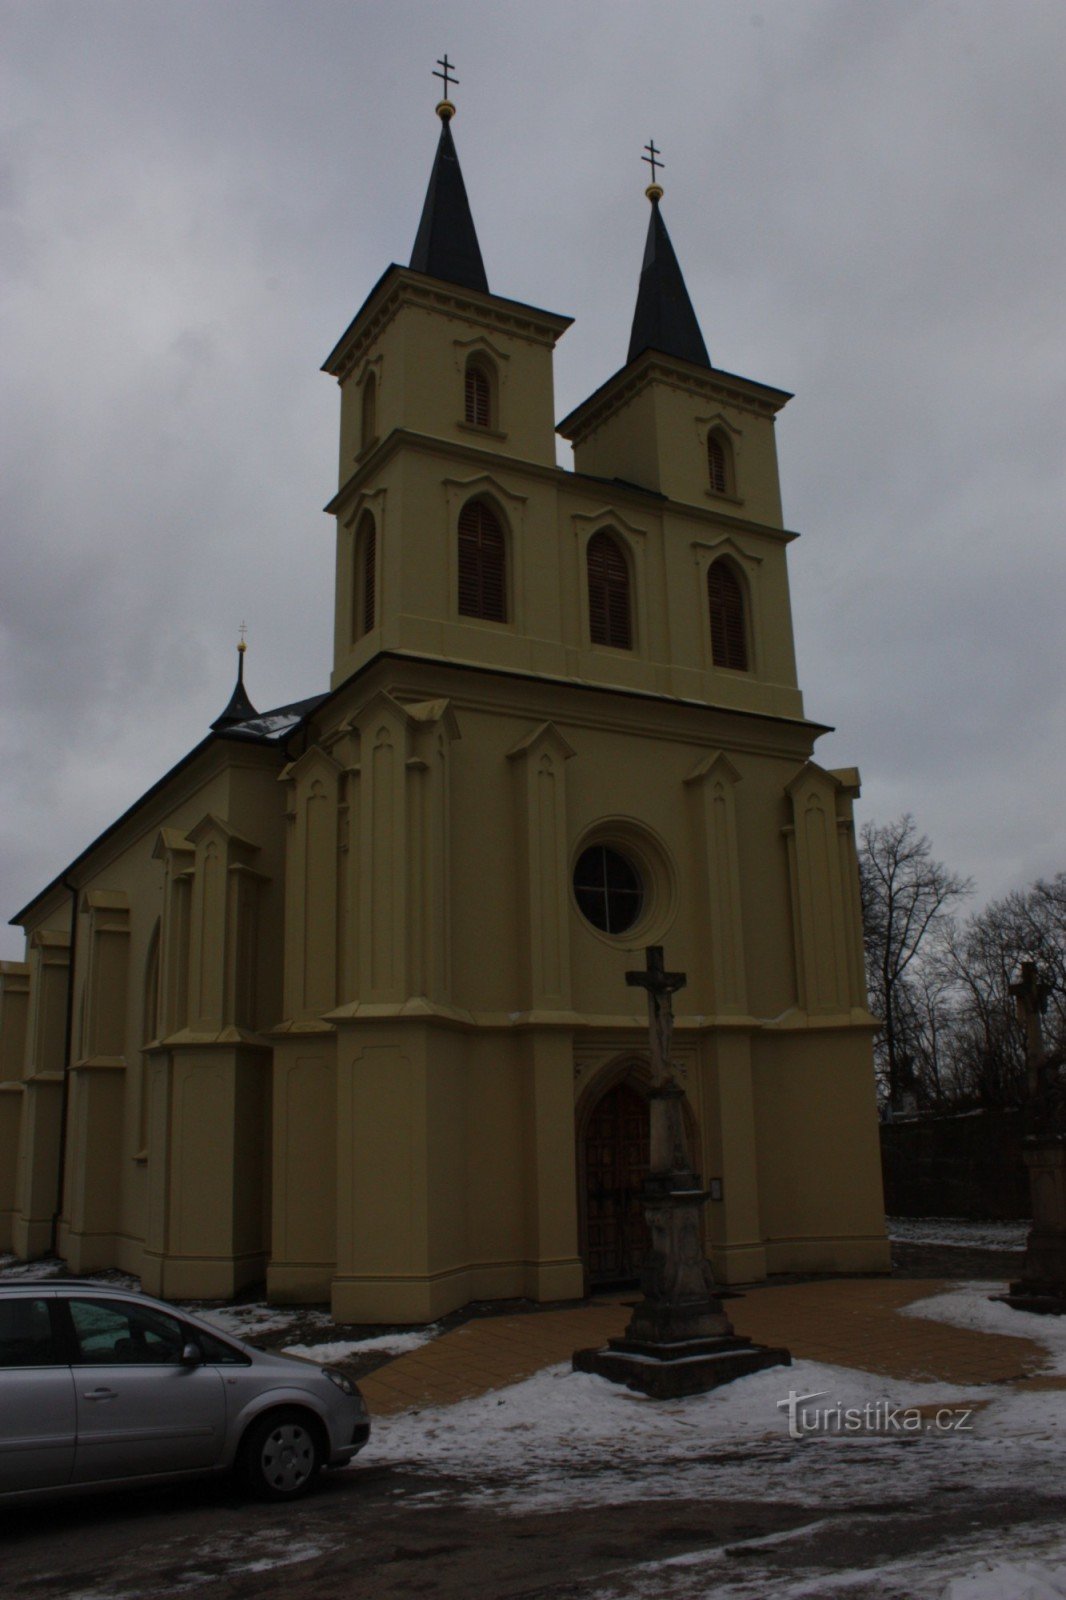 Cerkev Otaslavice